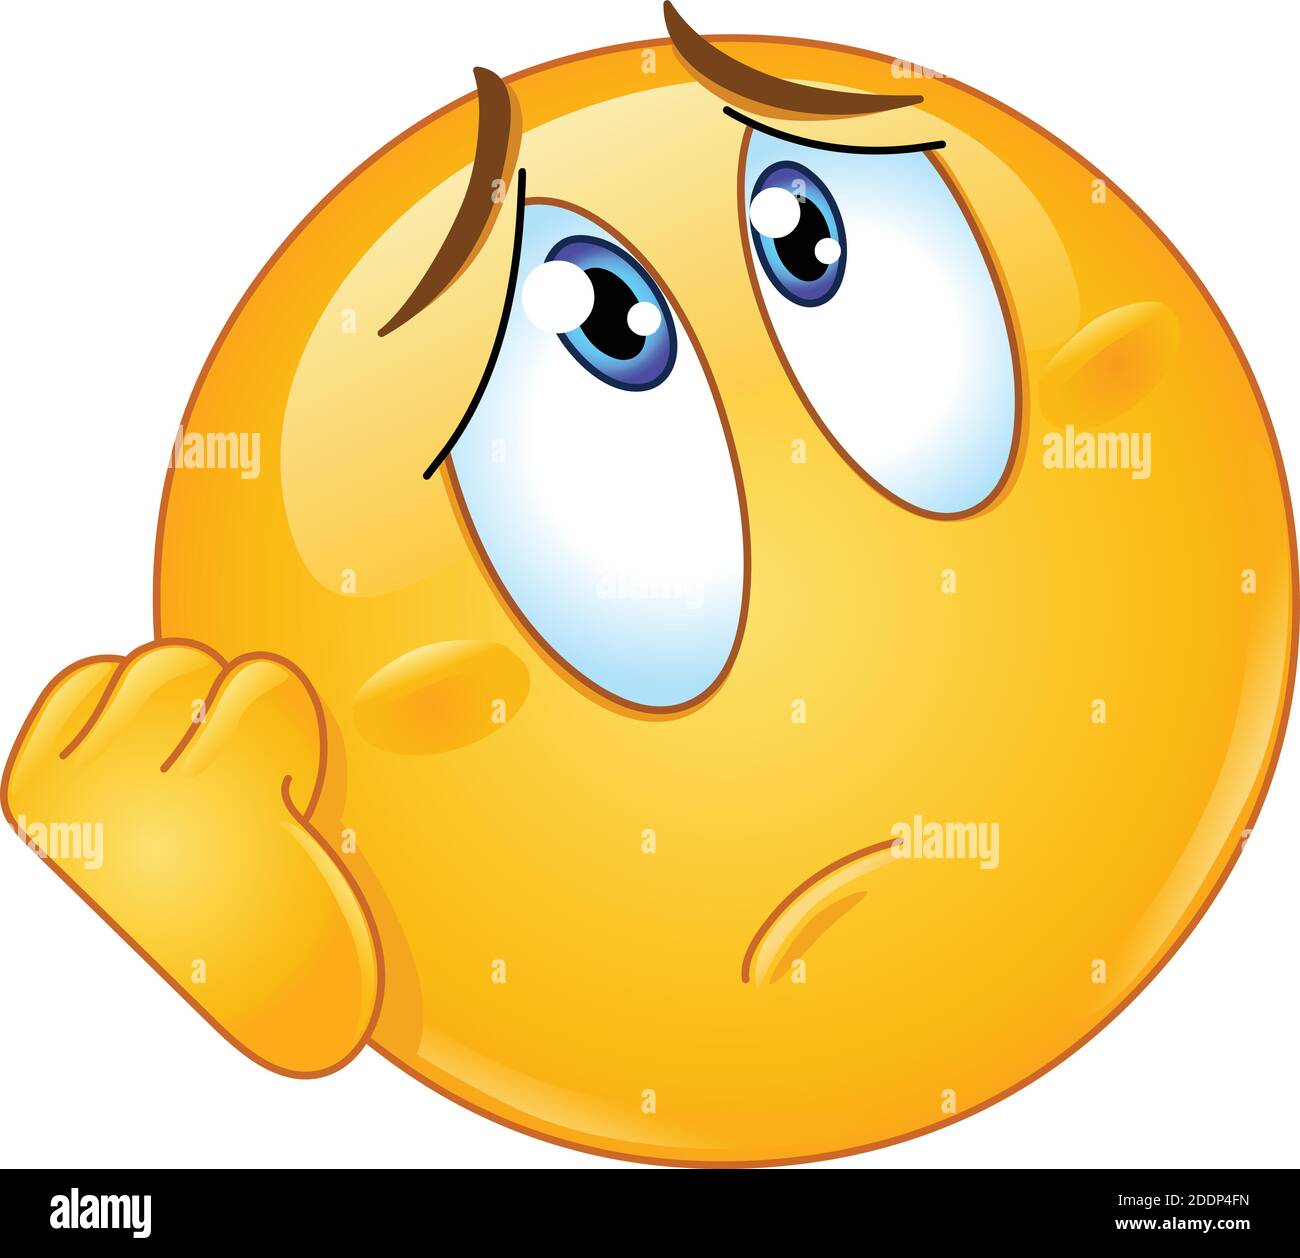 Emoticon preoccupato o triste emoji poggiando il viso sulla mano e guardando in alto Illustrazione Vettoriale